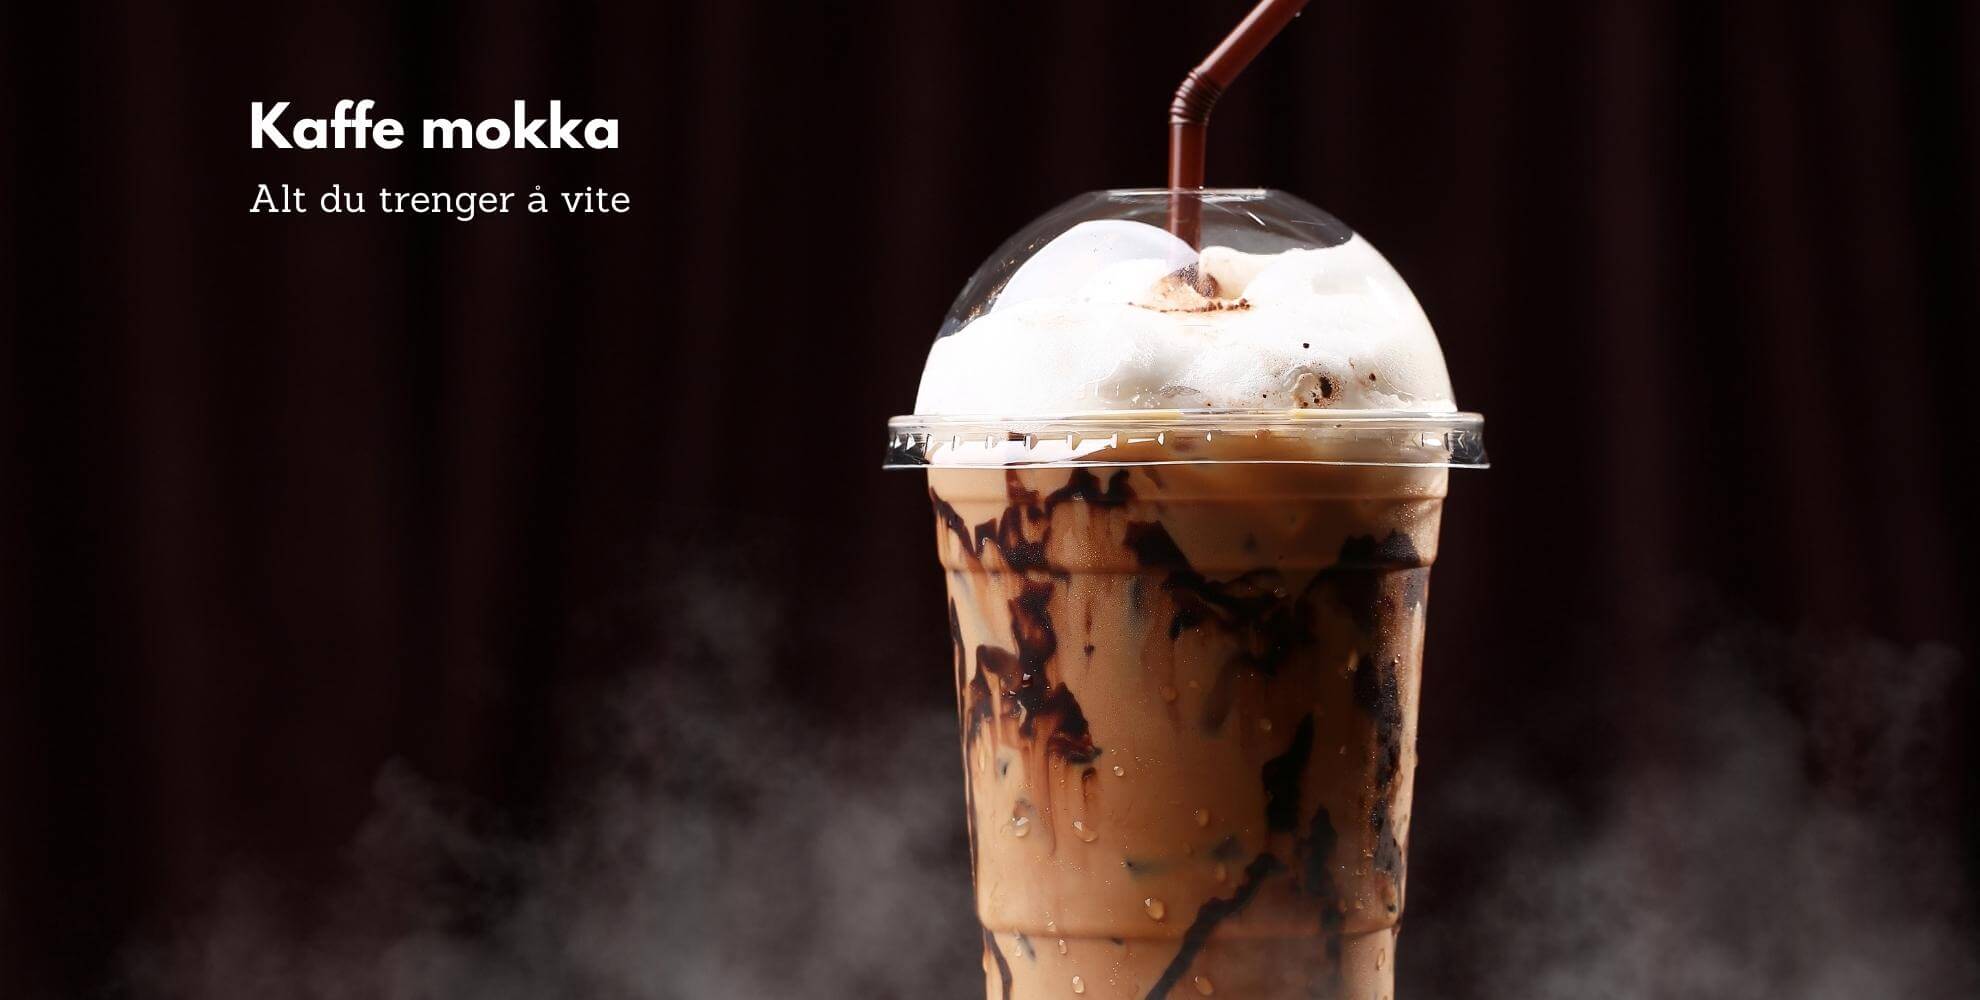 Mokka kaffe: Alt du trenger å vite